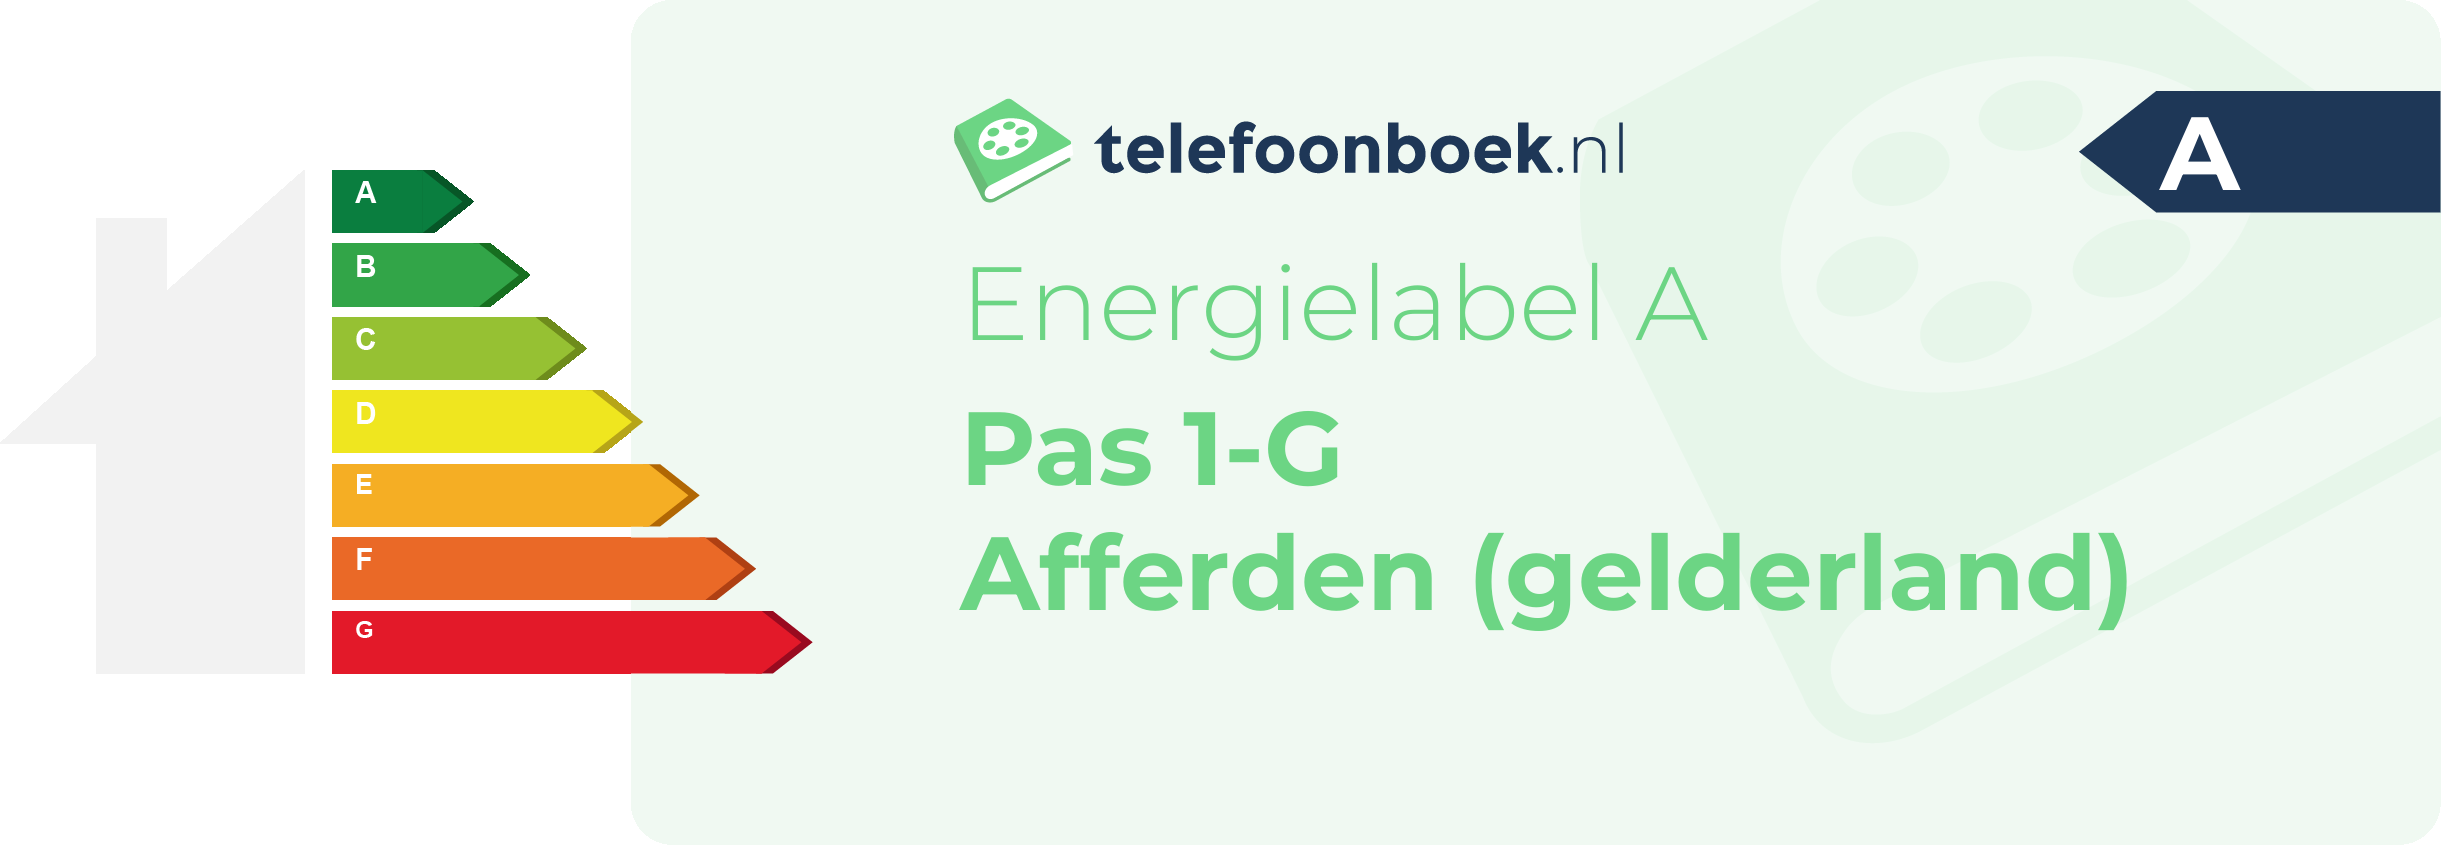 Energielabel Pas 1-G Afferden (Gelderland)